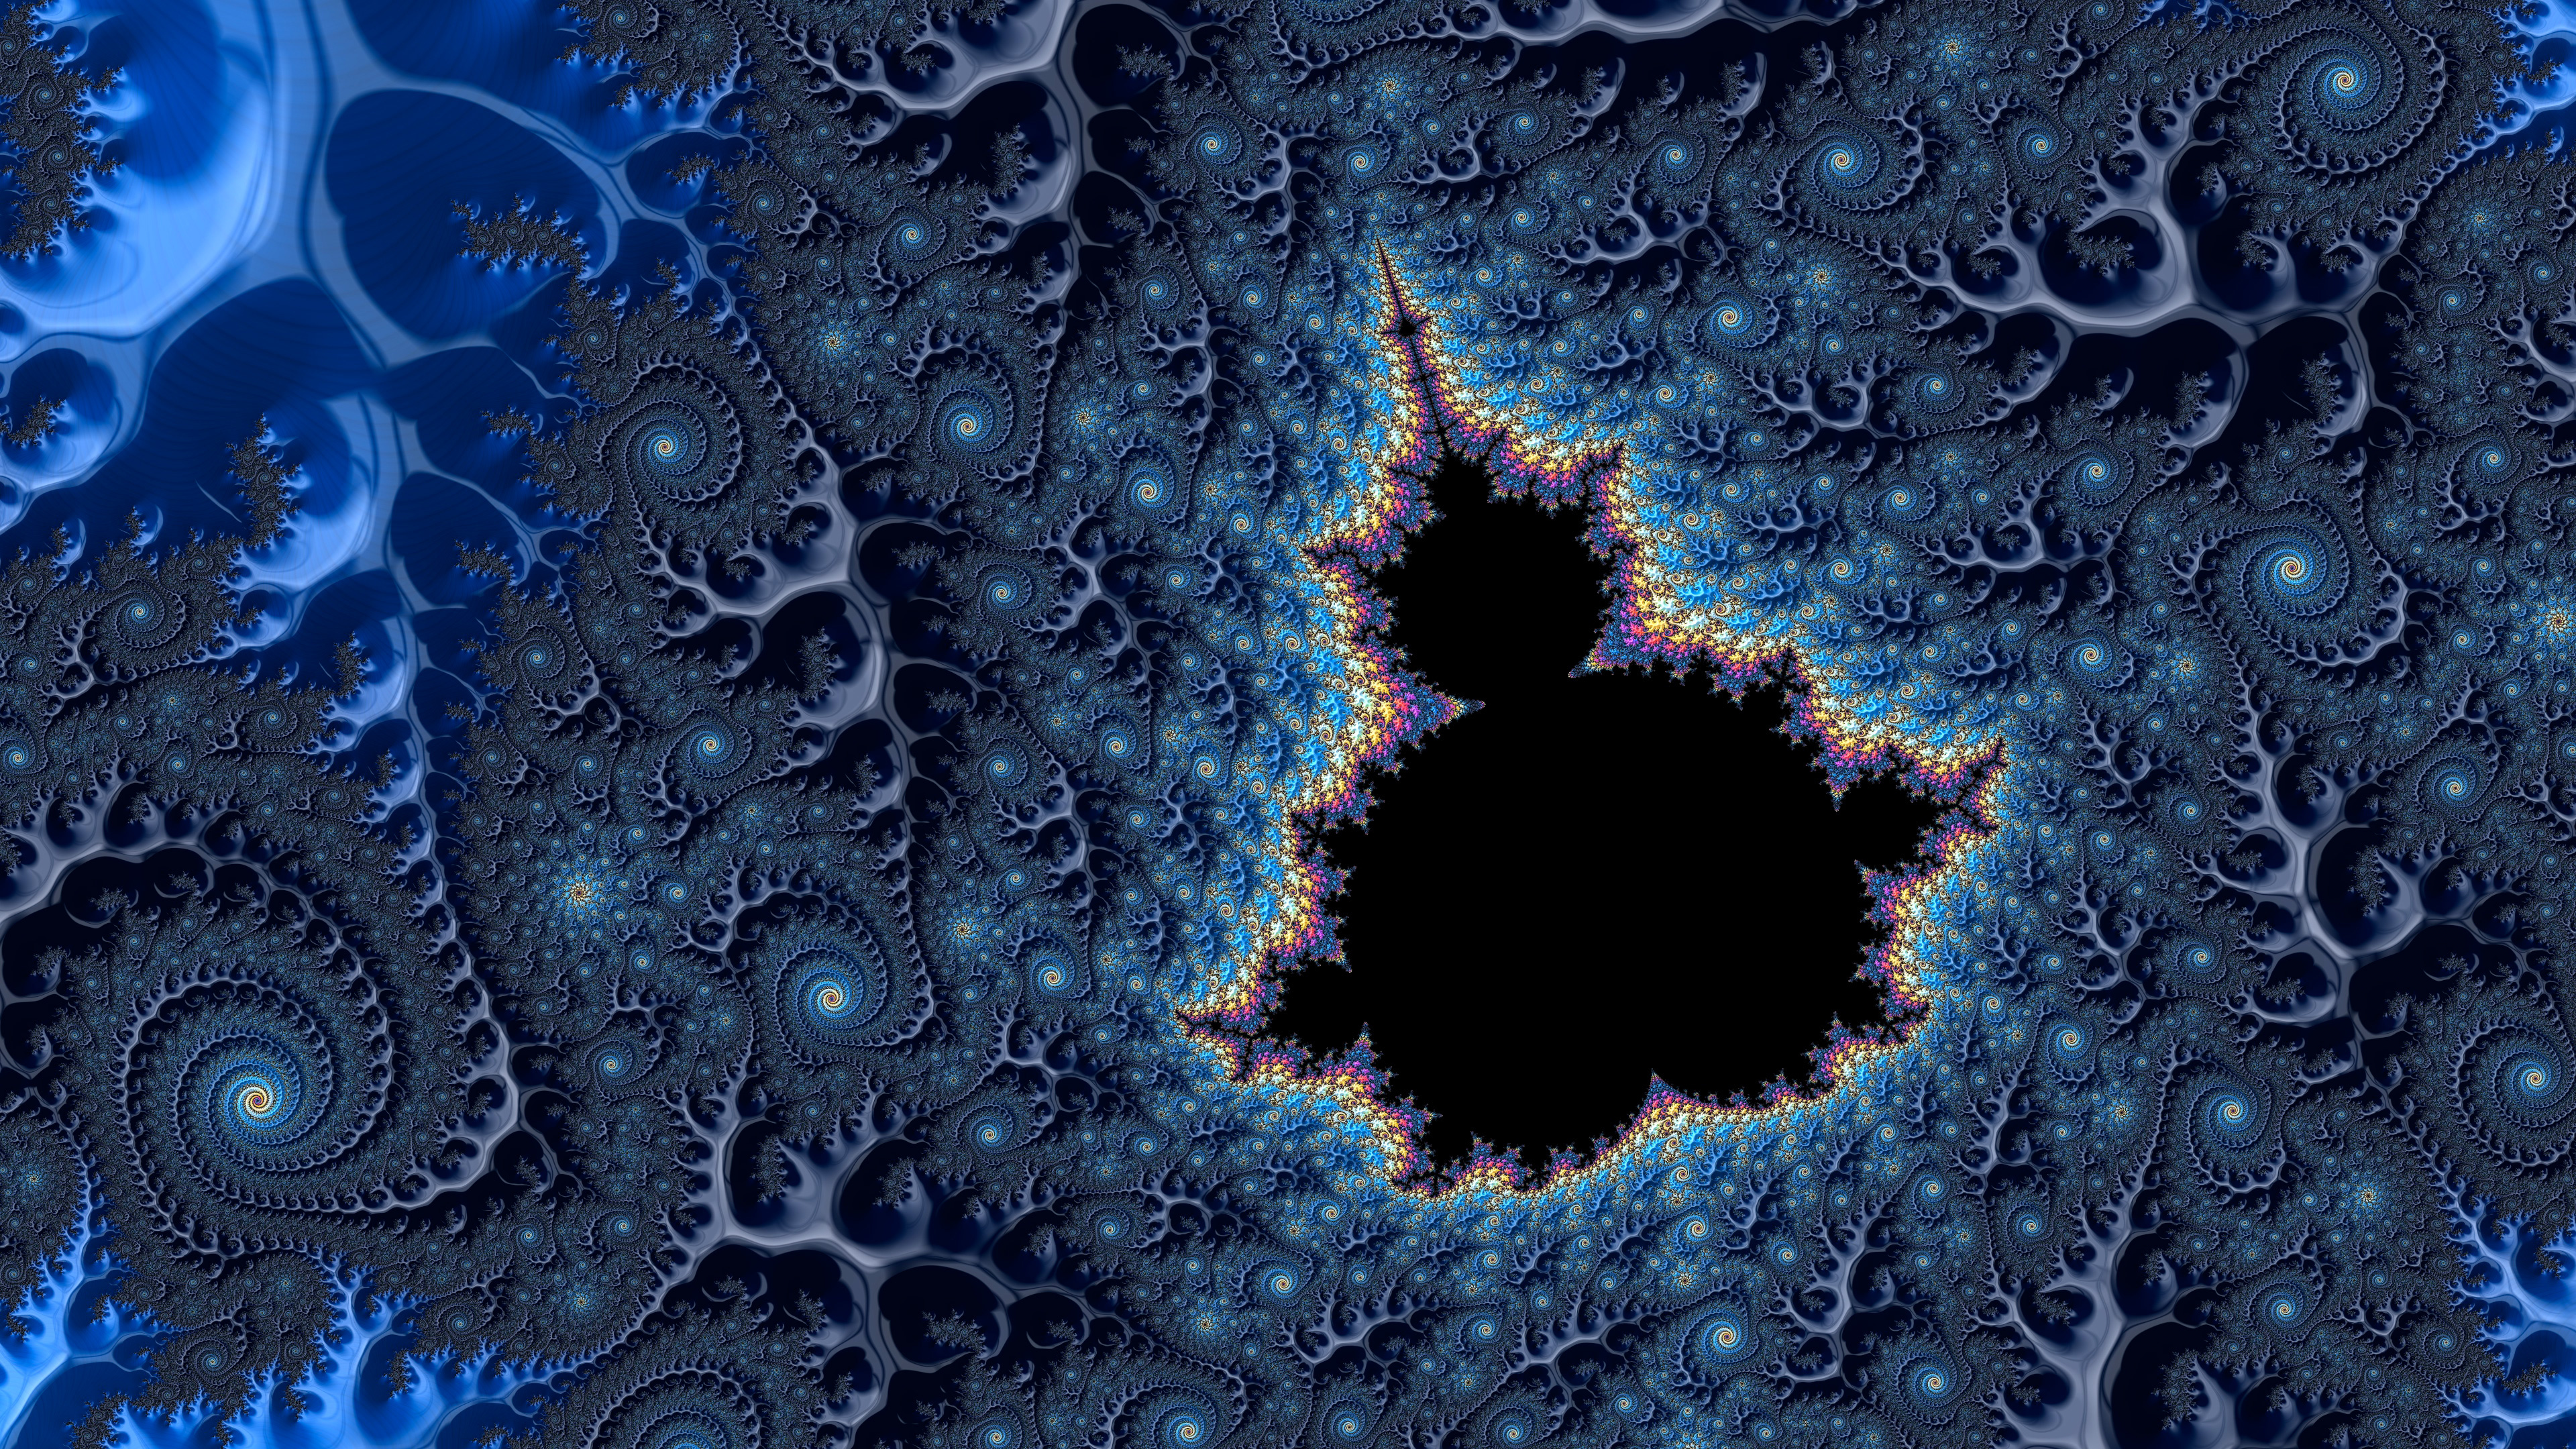 Mandelbrot fractal, Fraktal Wallpaper, 3840x2160 4K Desktop